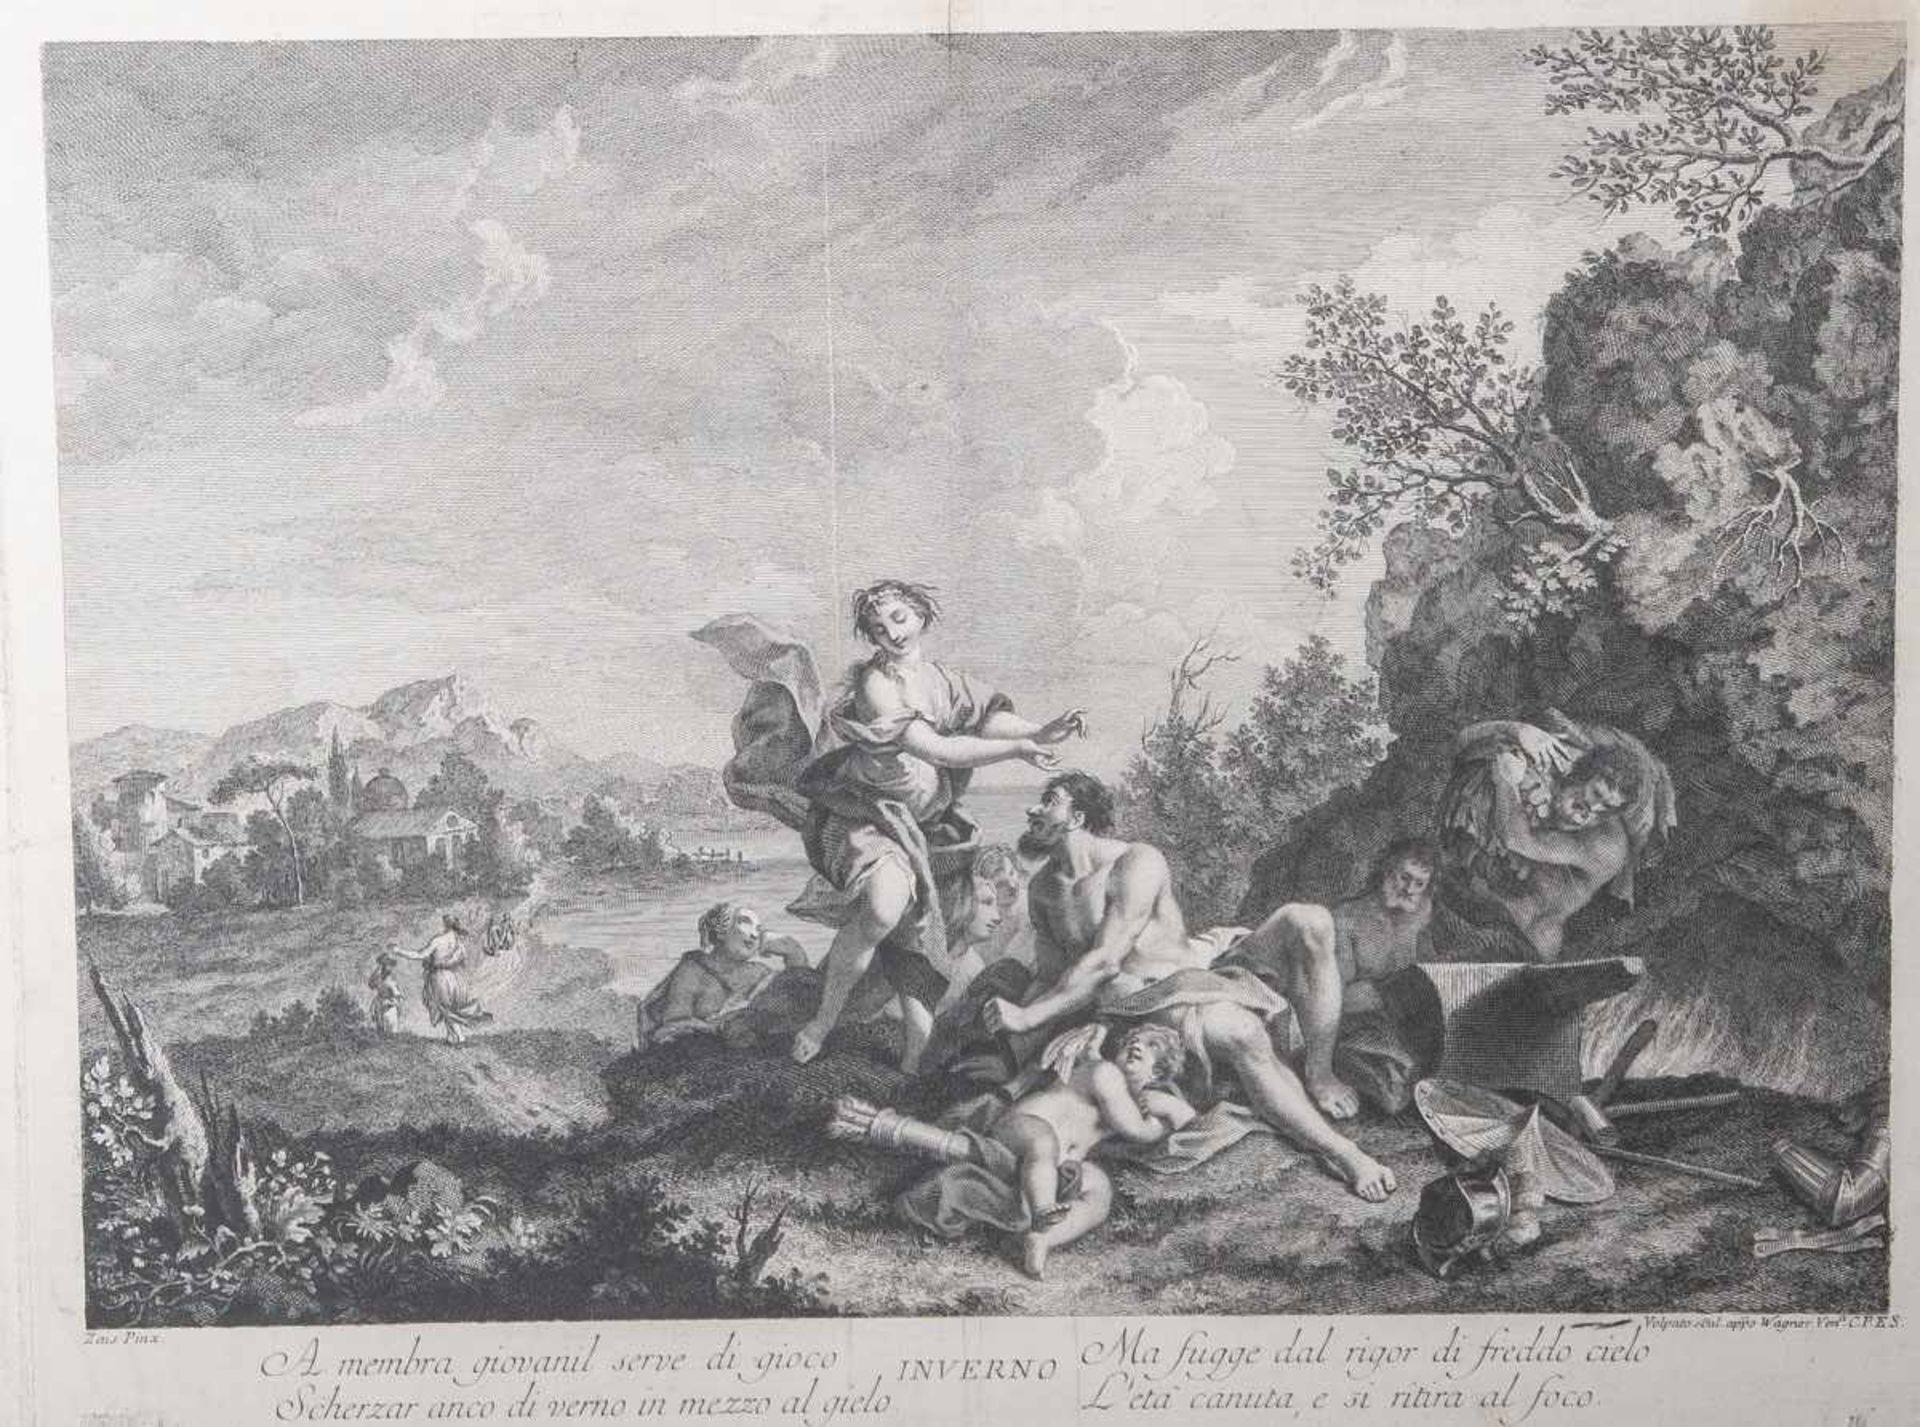 Unbekannter Künstler (18. Jahrhundert, wohl Italien), "Inverno", Kupferstich, bez.: gemaltnach Zais,